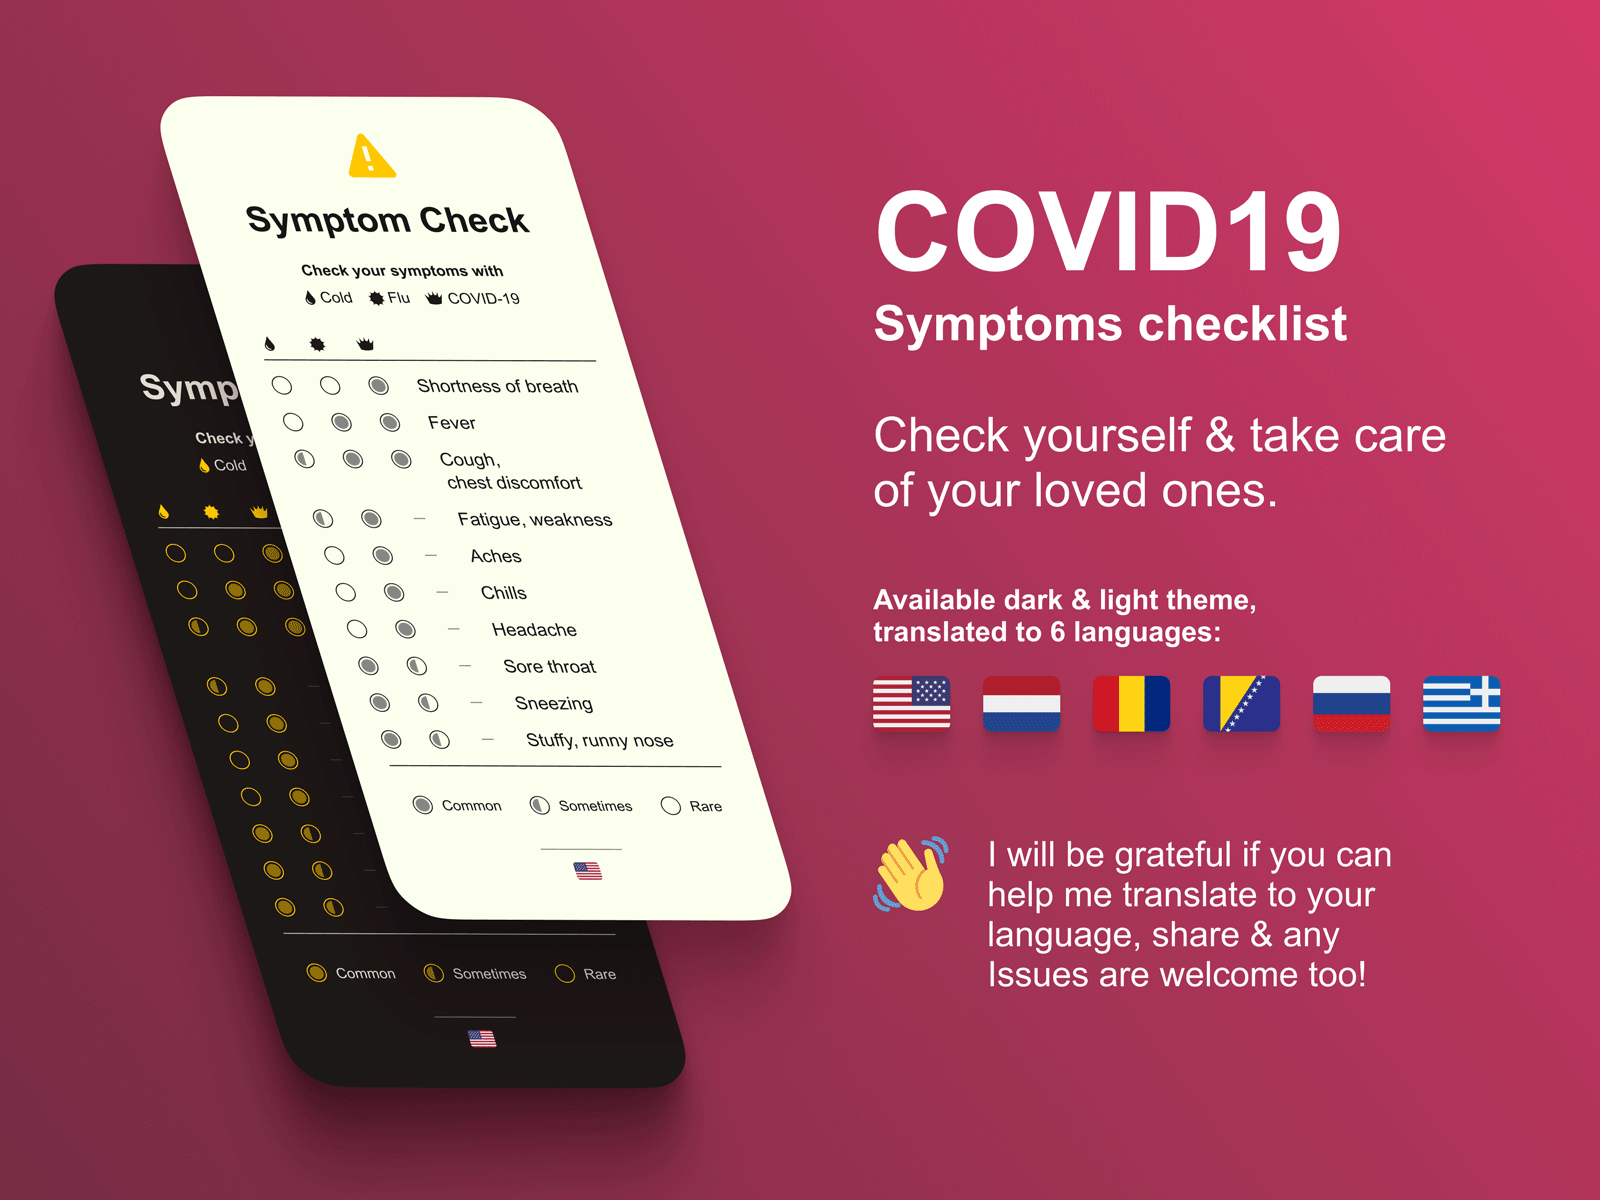 COVID-19 Symptoms Checklist